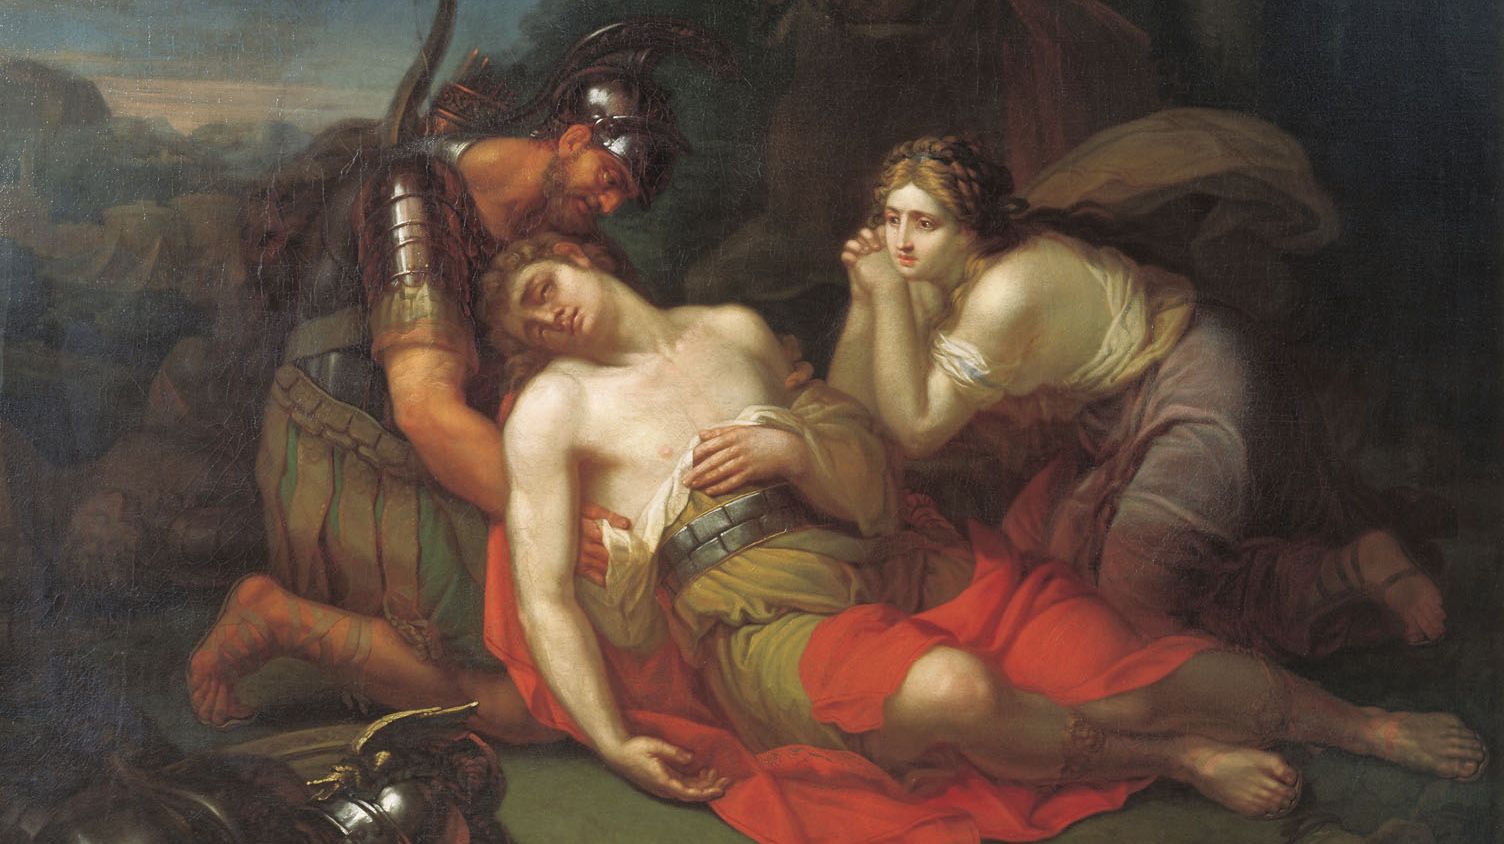 Курляндцев Степан. Эрминия и Вафрин находят раненого Танкреда. 1803